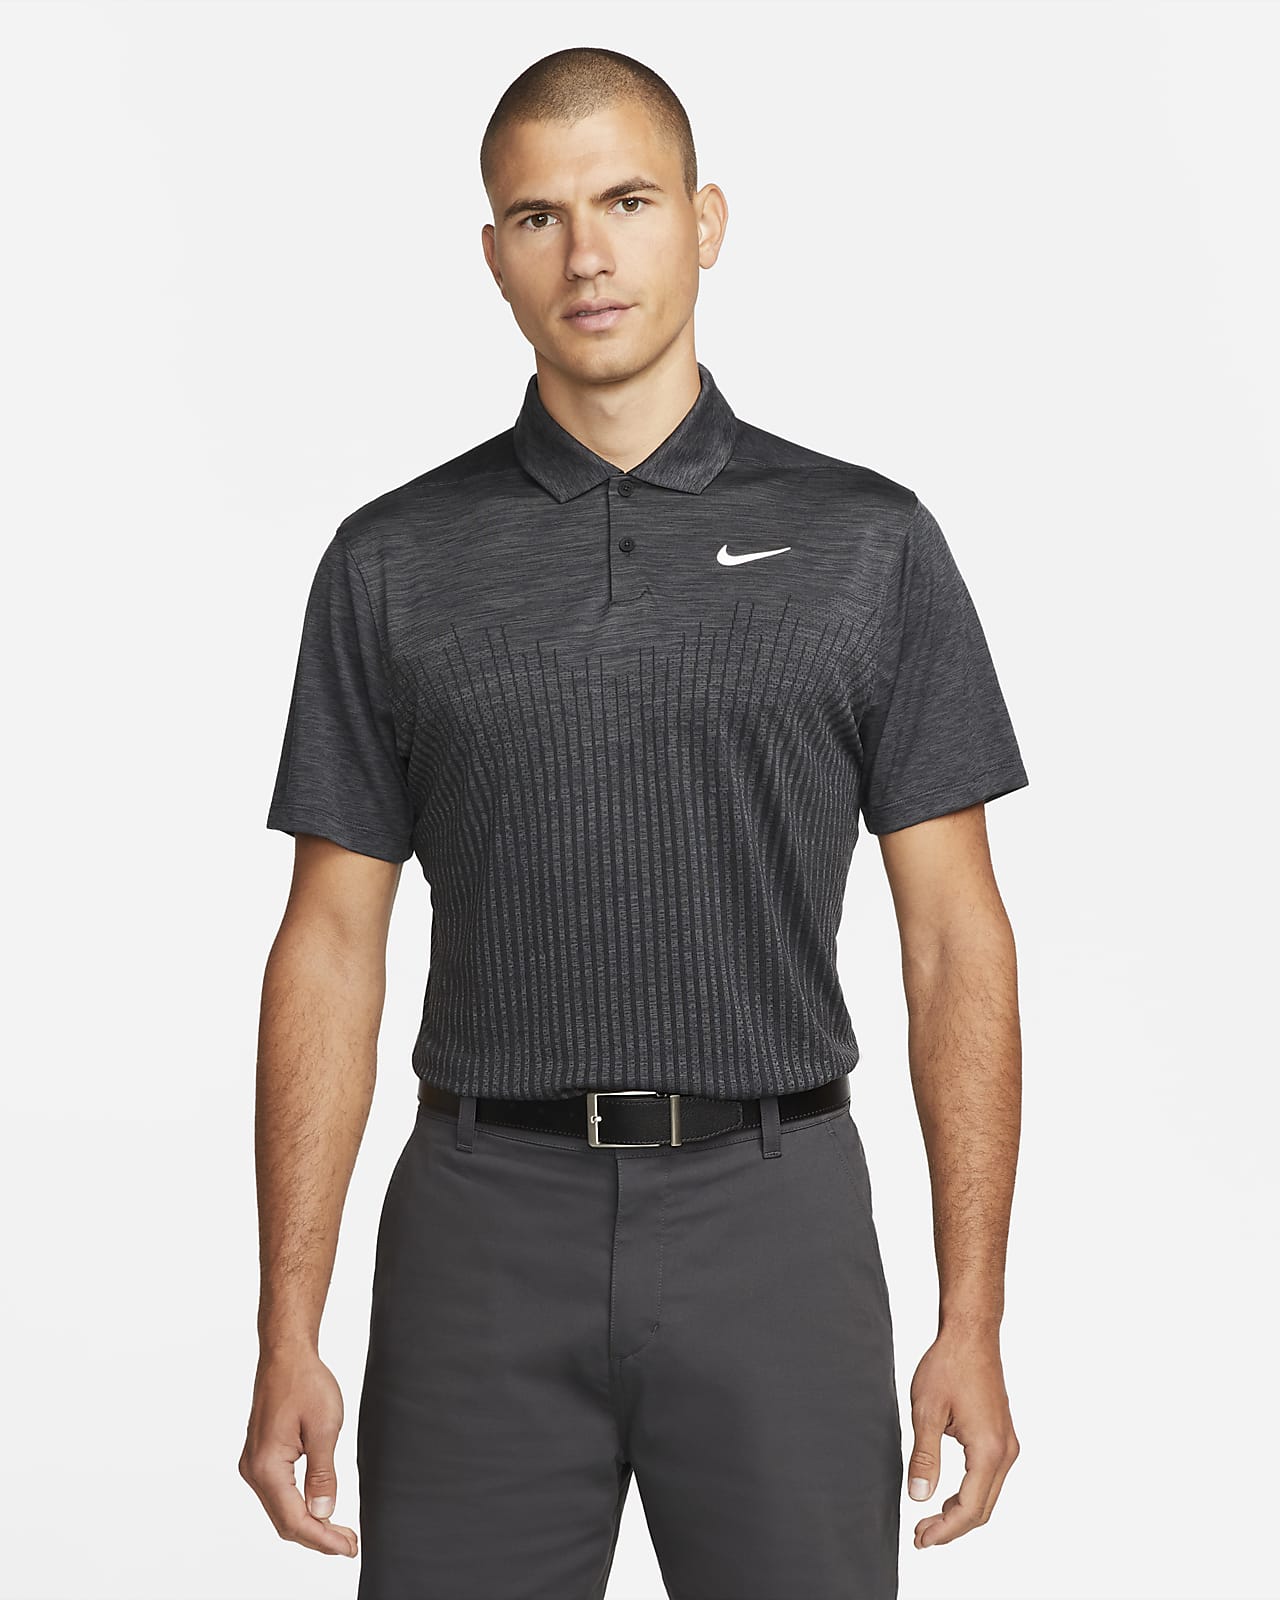 Nike Dri-FIT ADV Vapor speziell entwickeltes Golf-Poloshirt für Herren